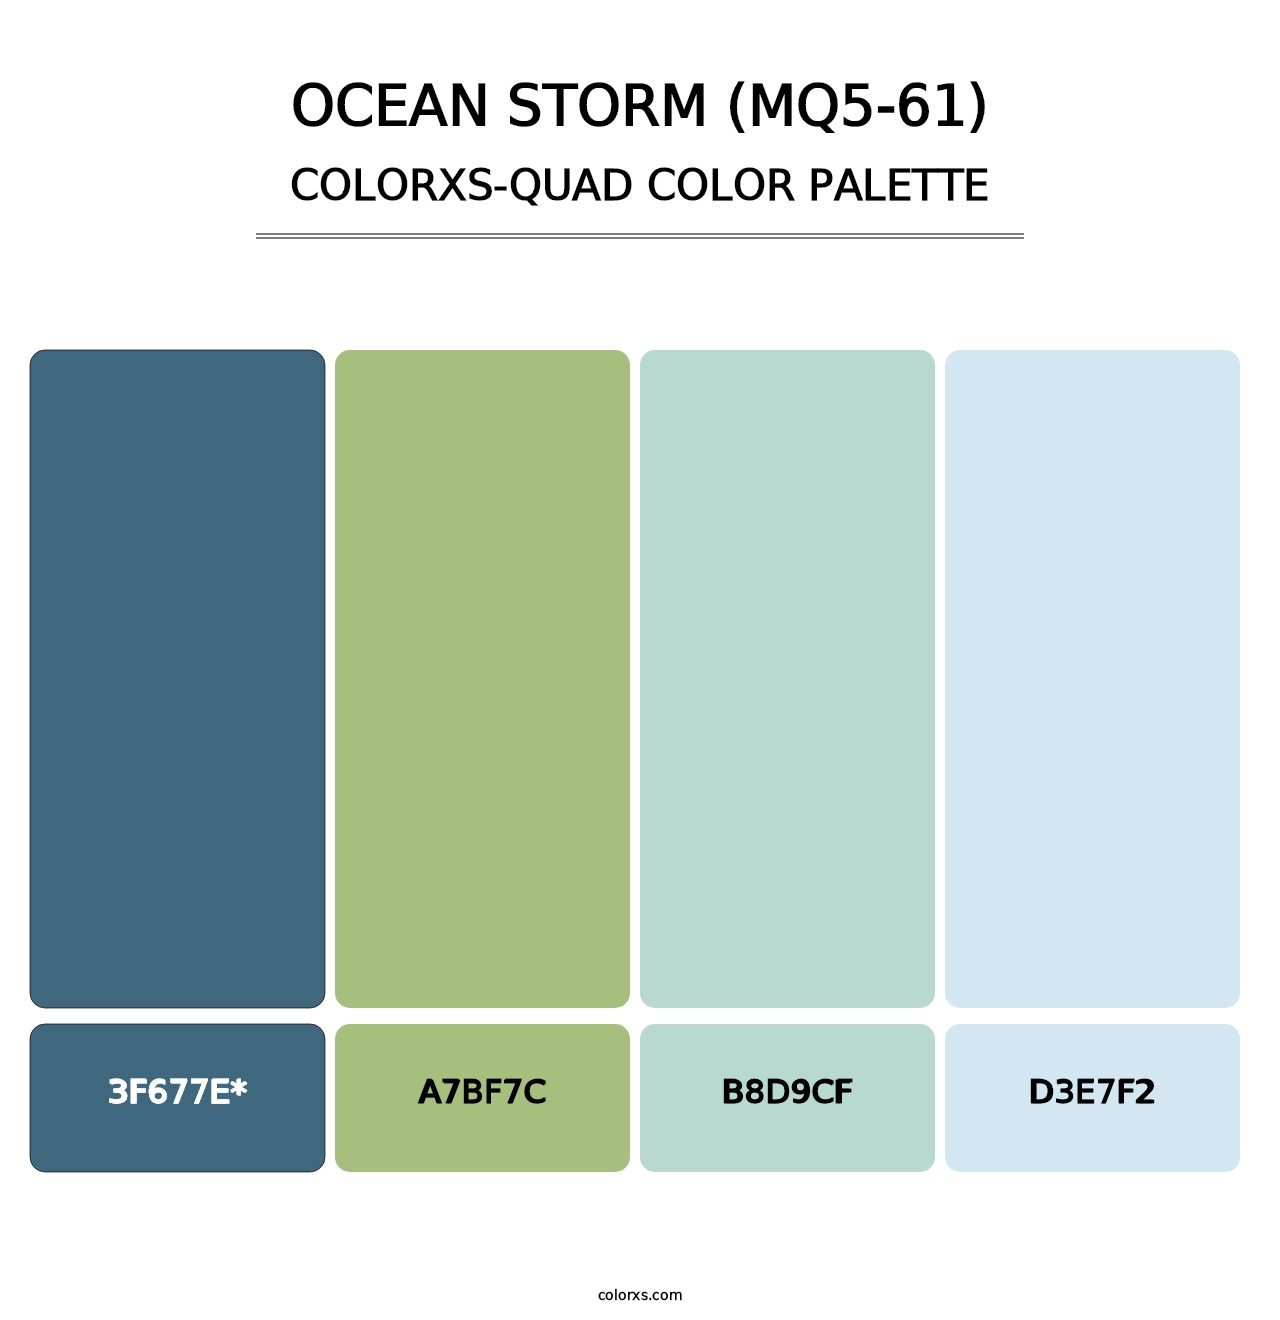 Ocean Storm (MQ5-61) - Colorxs Quad Palette